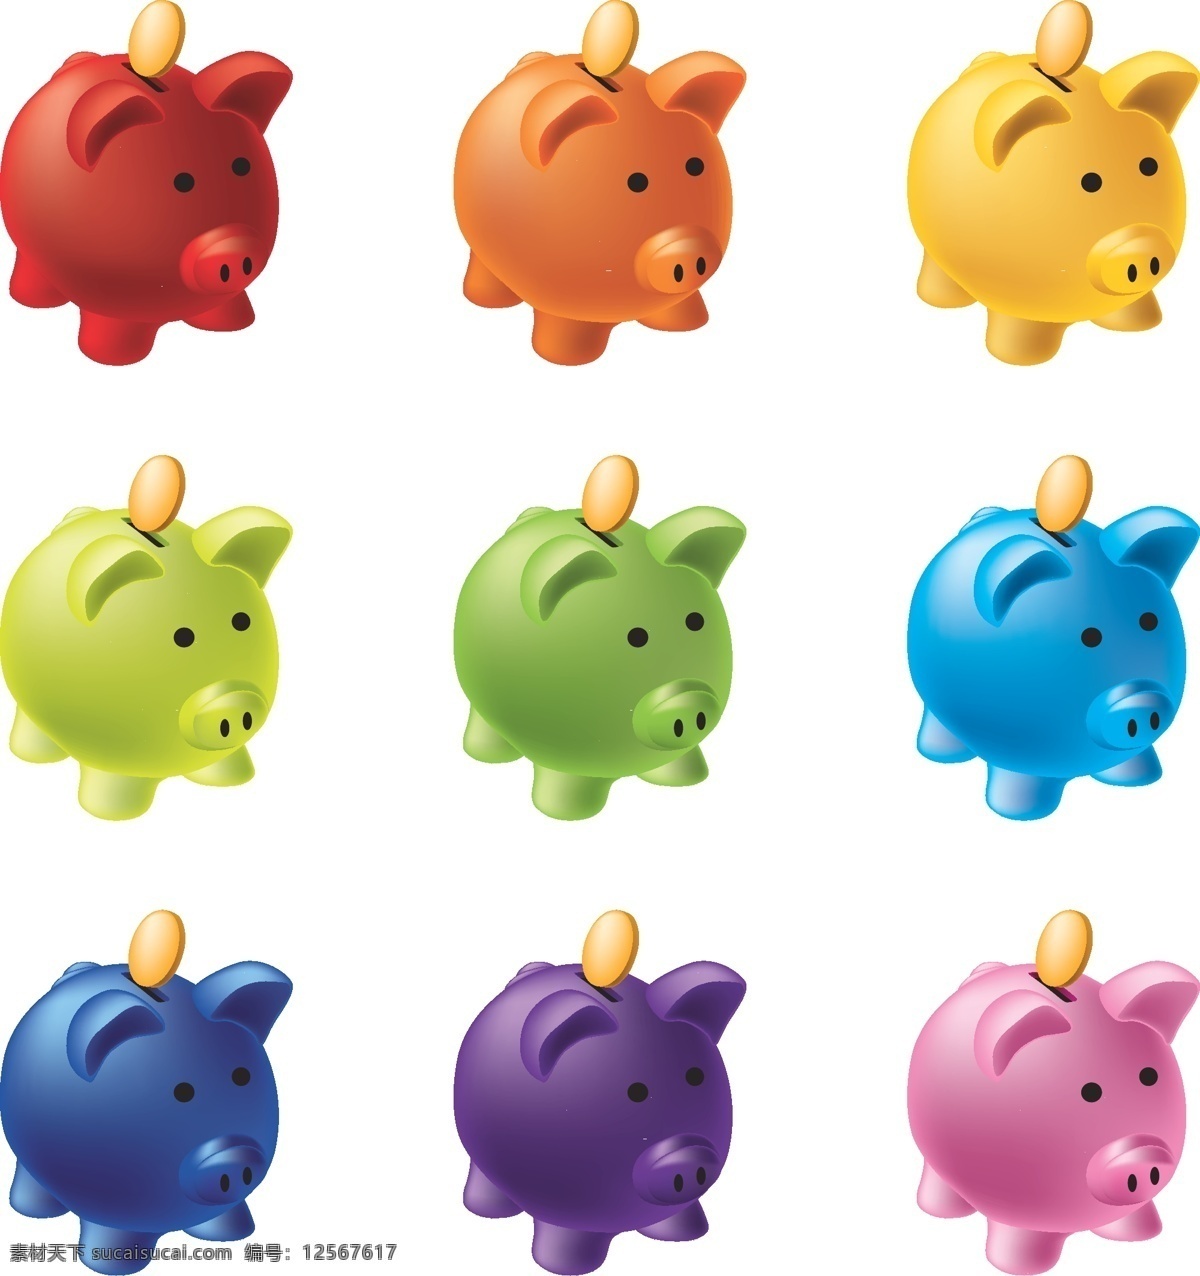 彩色 小 猪 储蓄罐 可爱 小猪 金币 存钱罐 矢量图 生活用品 生活百科 矢量